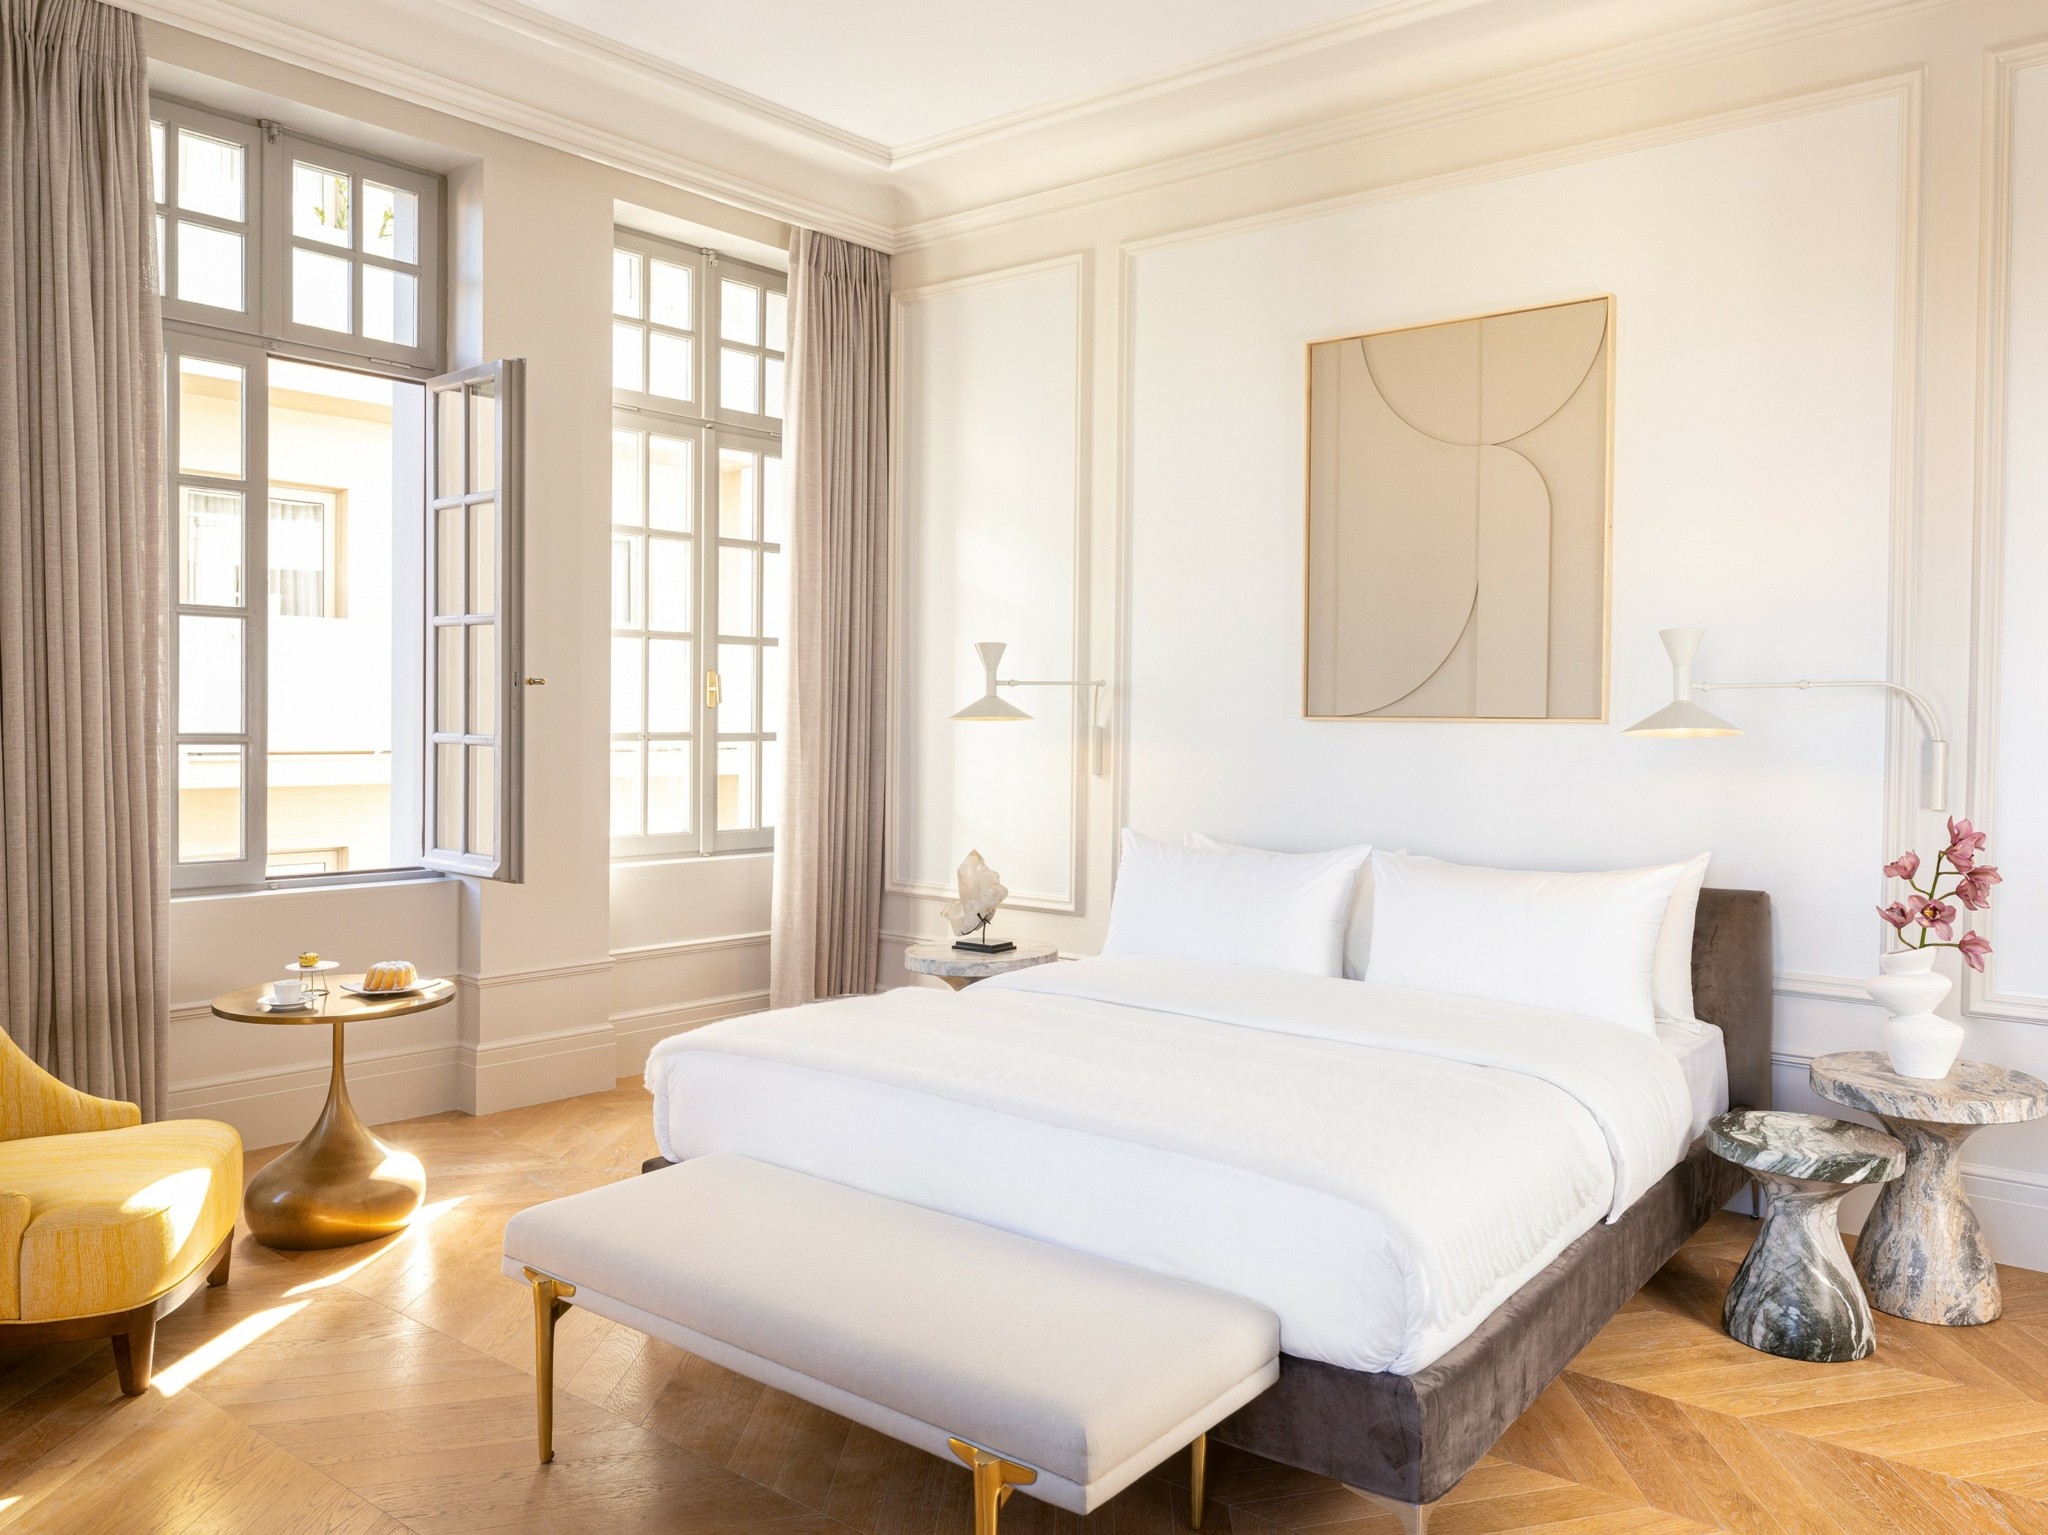 Πώς το κτίριο του Χυτήρογλου μεταμορφώθηκε στο ξενοδοχείο The Dolli της Grecotel με διαμερίσματα που θυμίζουν εκλεκτικό Παρίσι